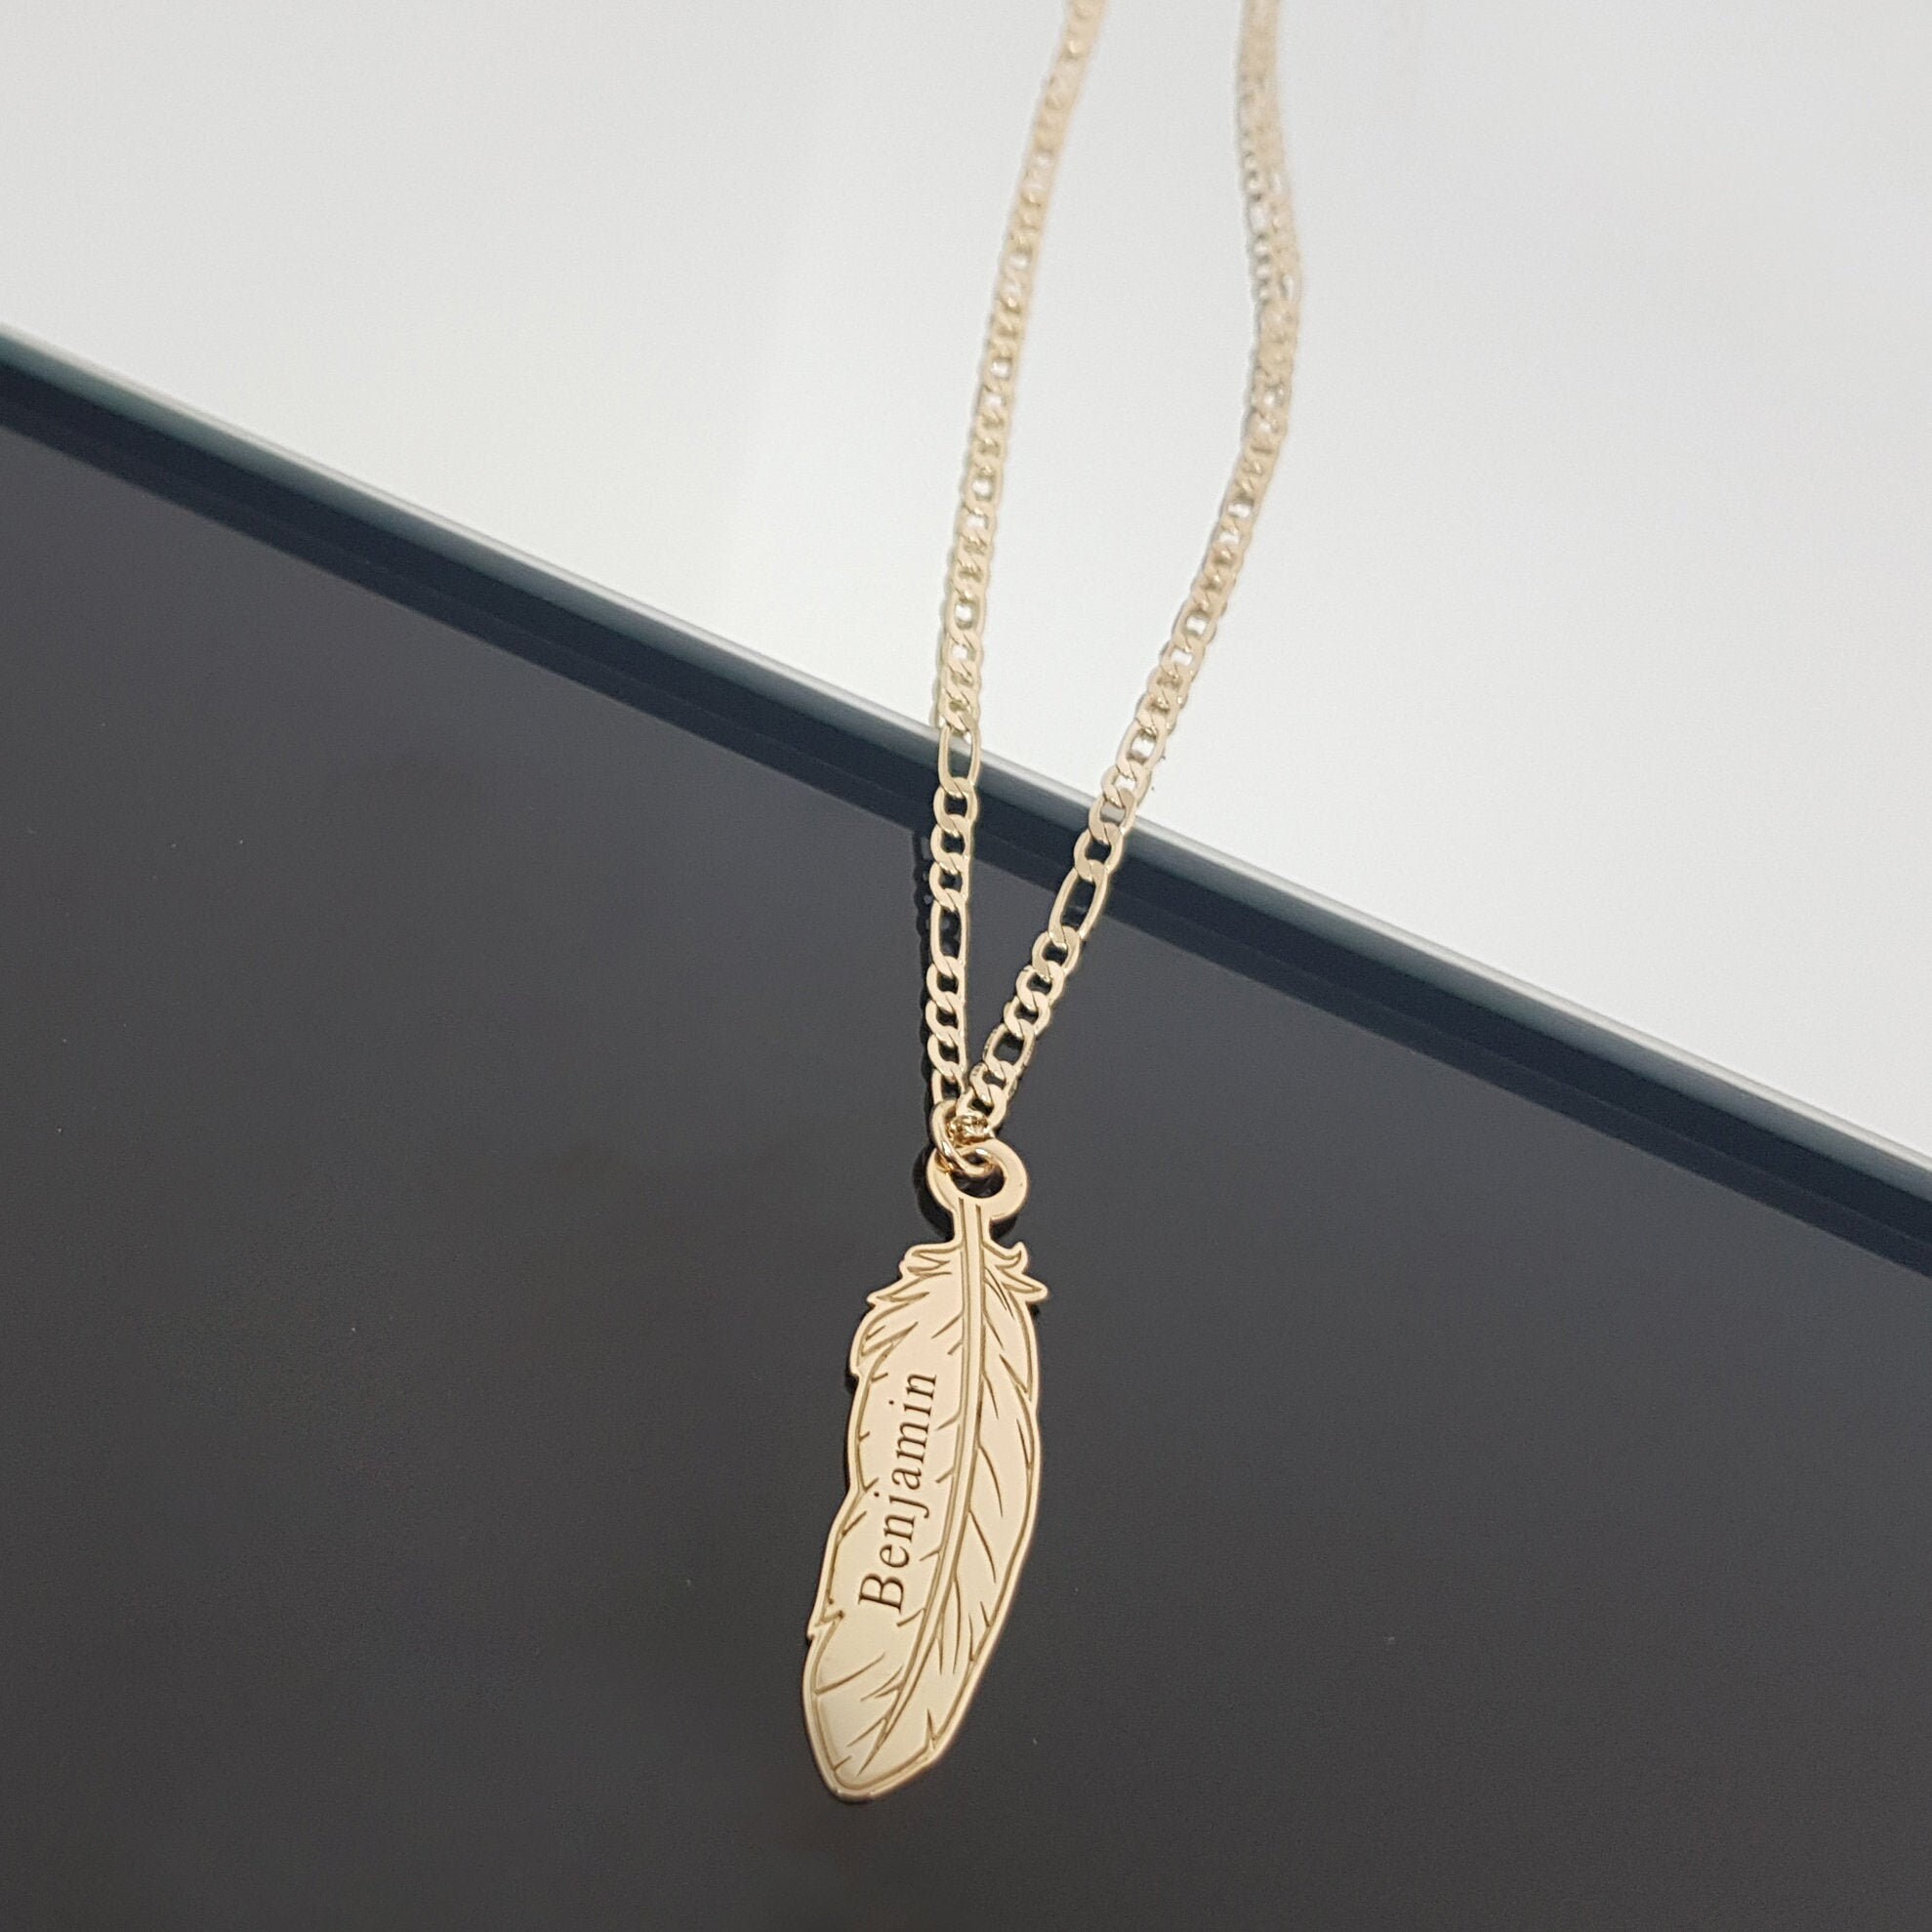 10PCS Men's Feather Necklace - Mens Feather Pendant - Men's Silver Necklace  | eBay